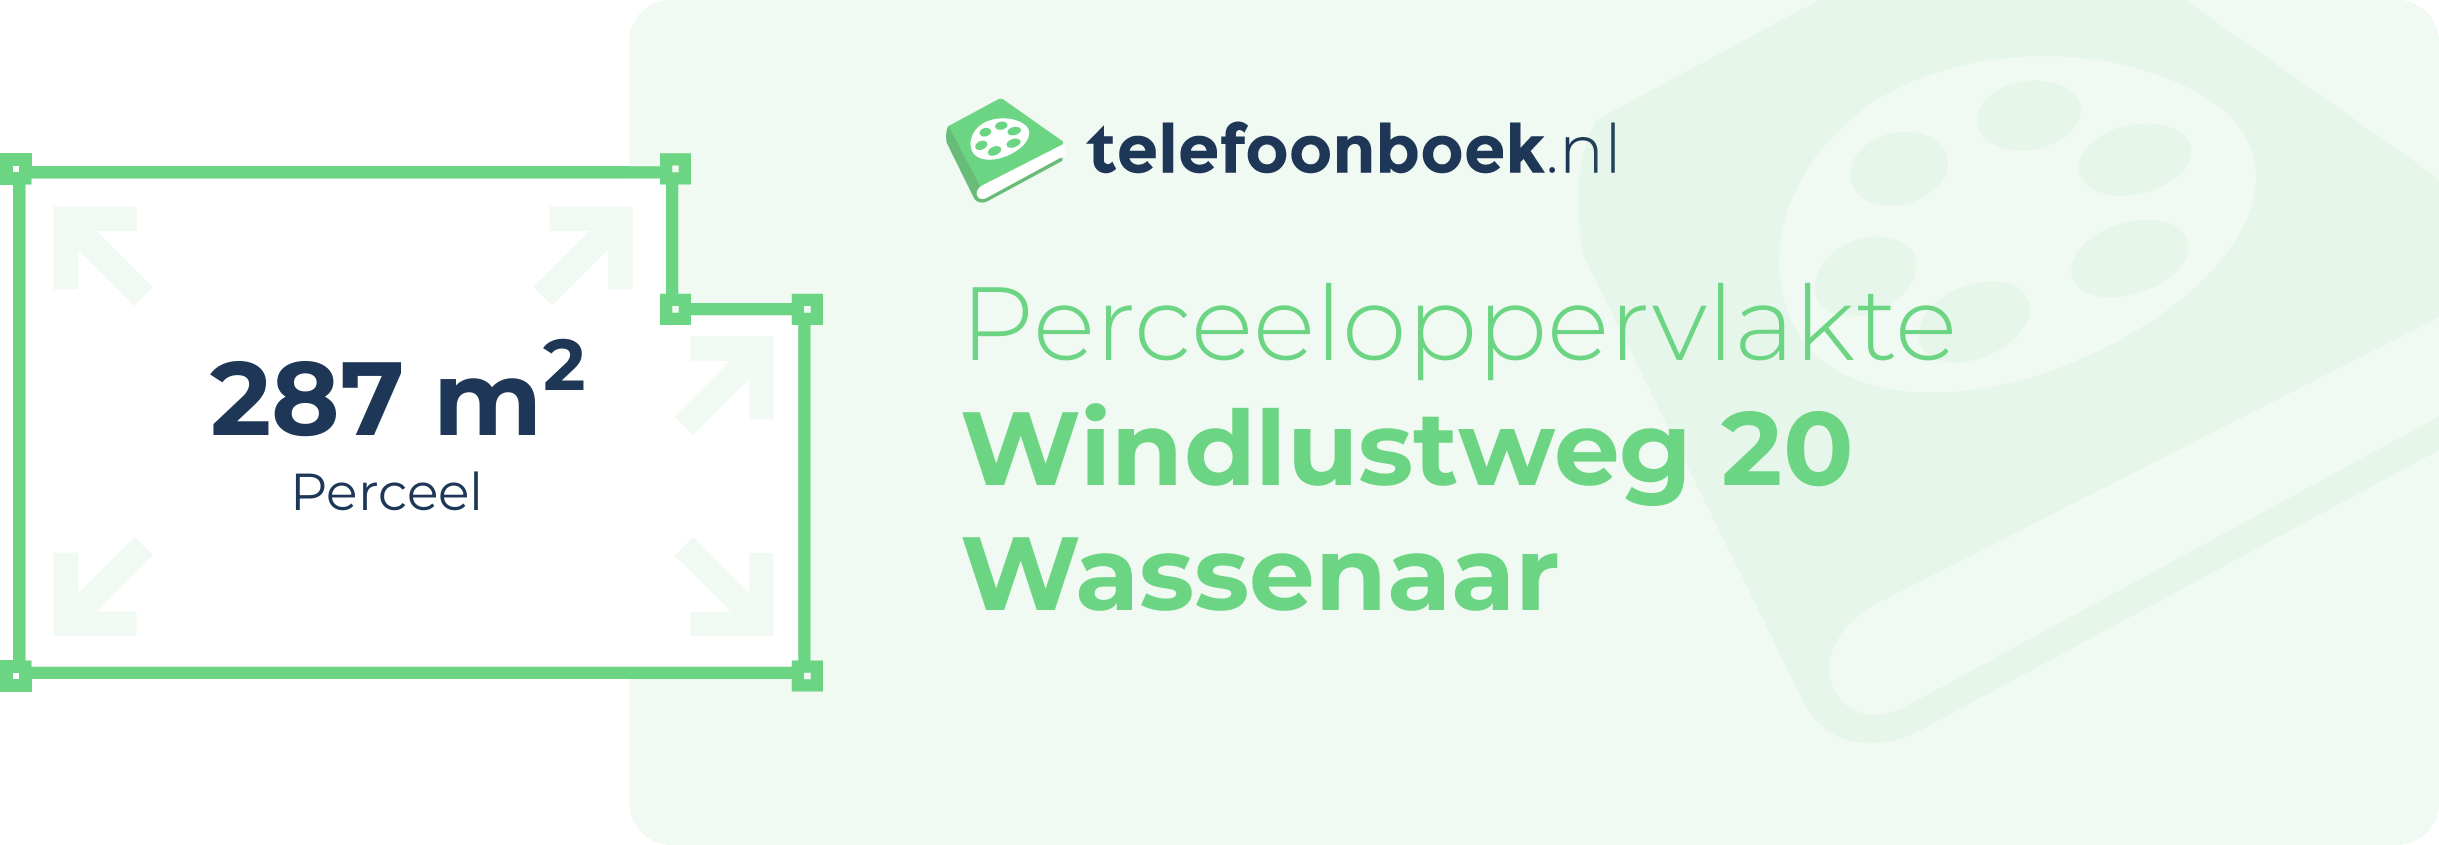 Perceeloppervlakte Windlustweg 20 Wassenaar